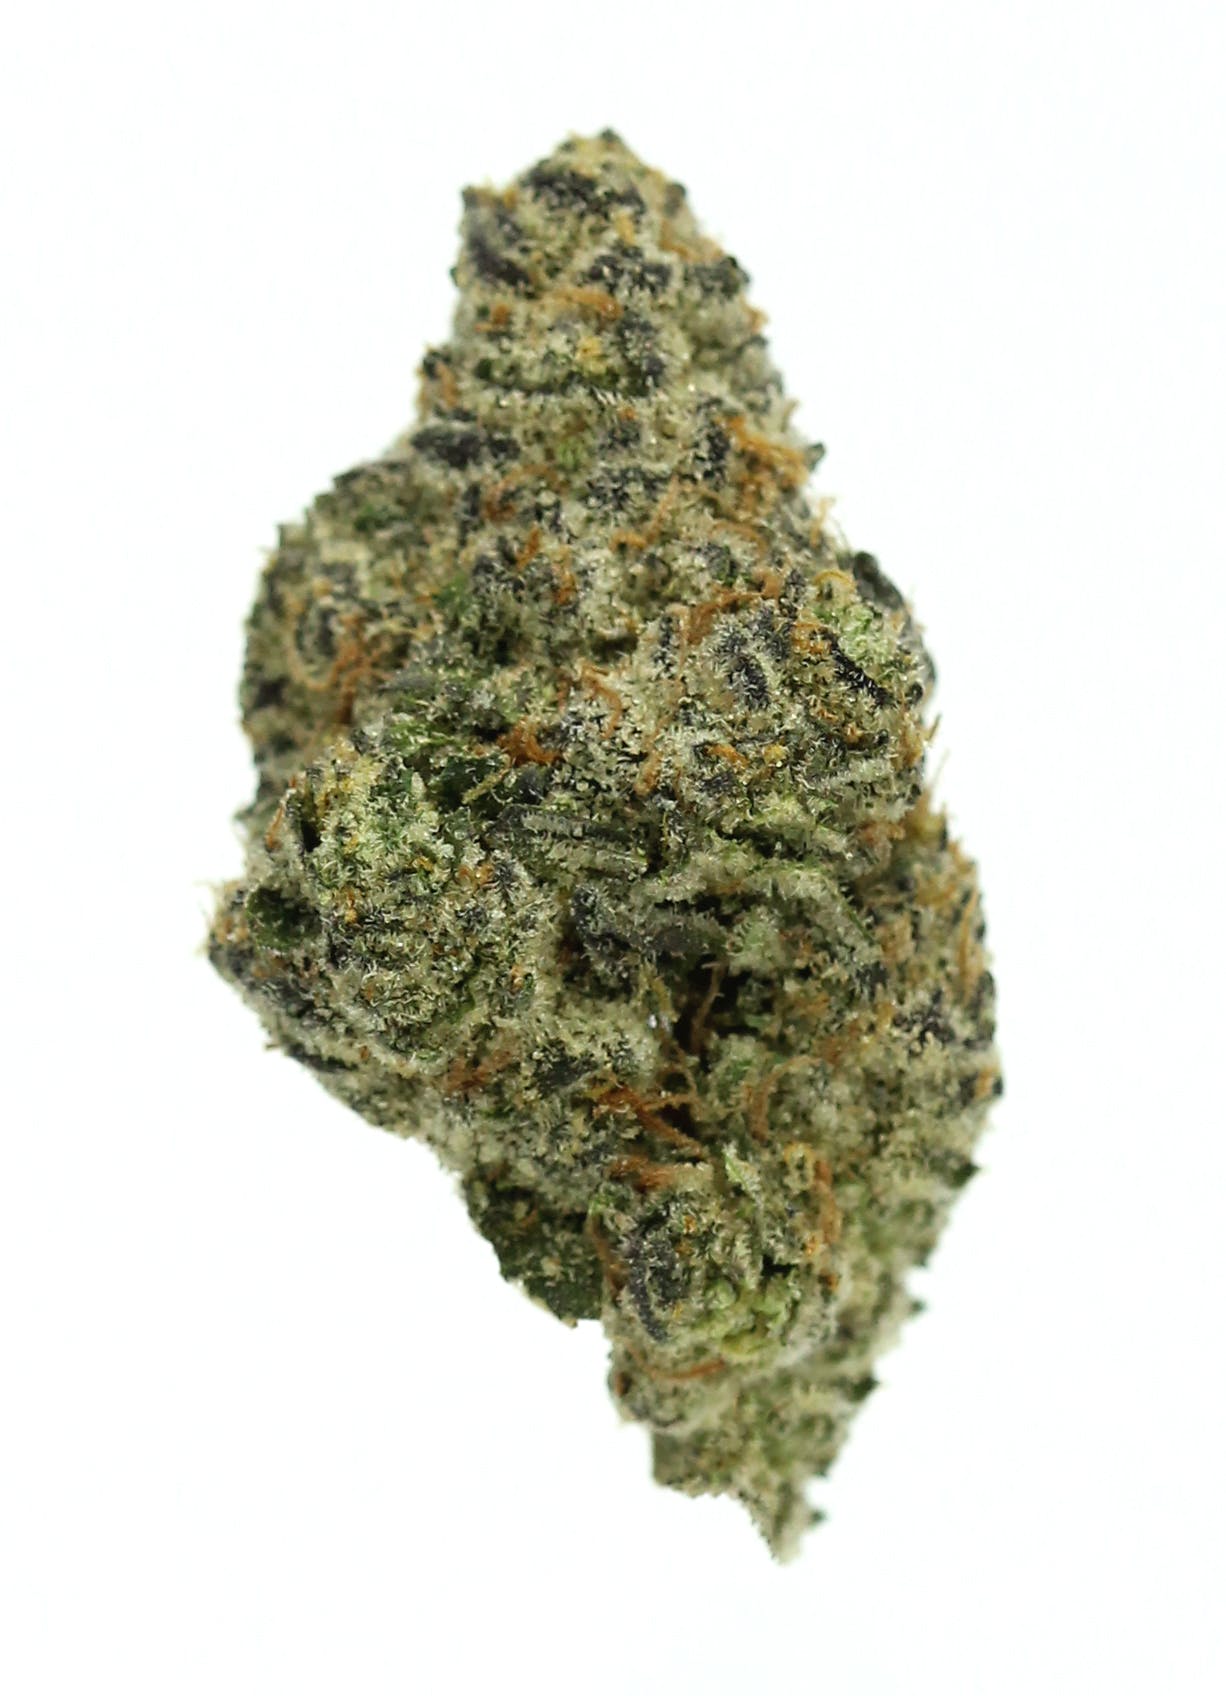 marijuana-dispensaries-752-commercial-st-2320-san-jose-3-bros-grow-lucky-7-29-39-25thca